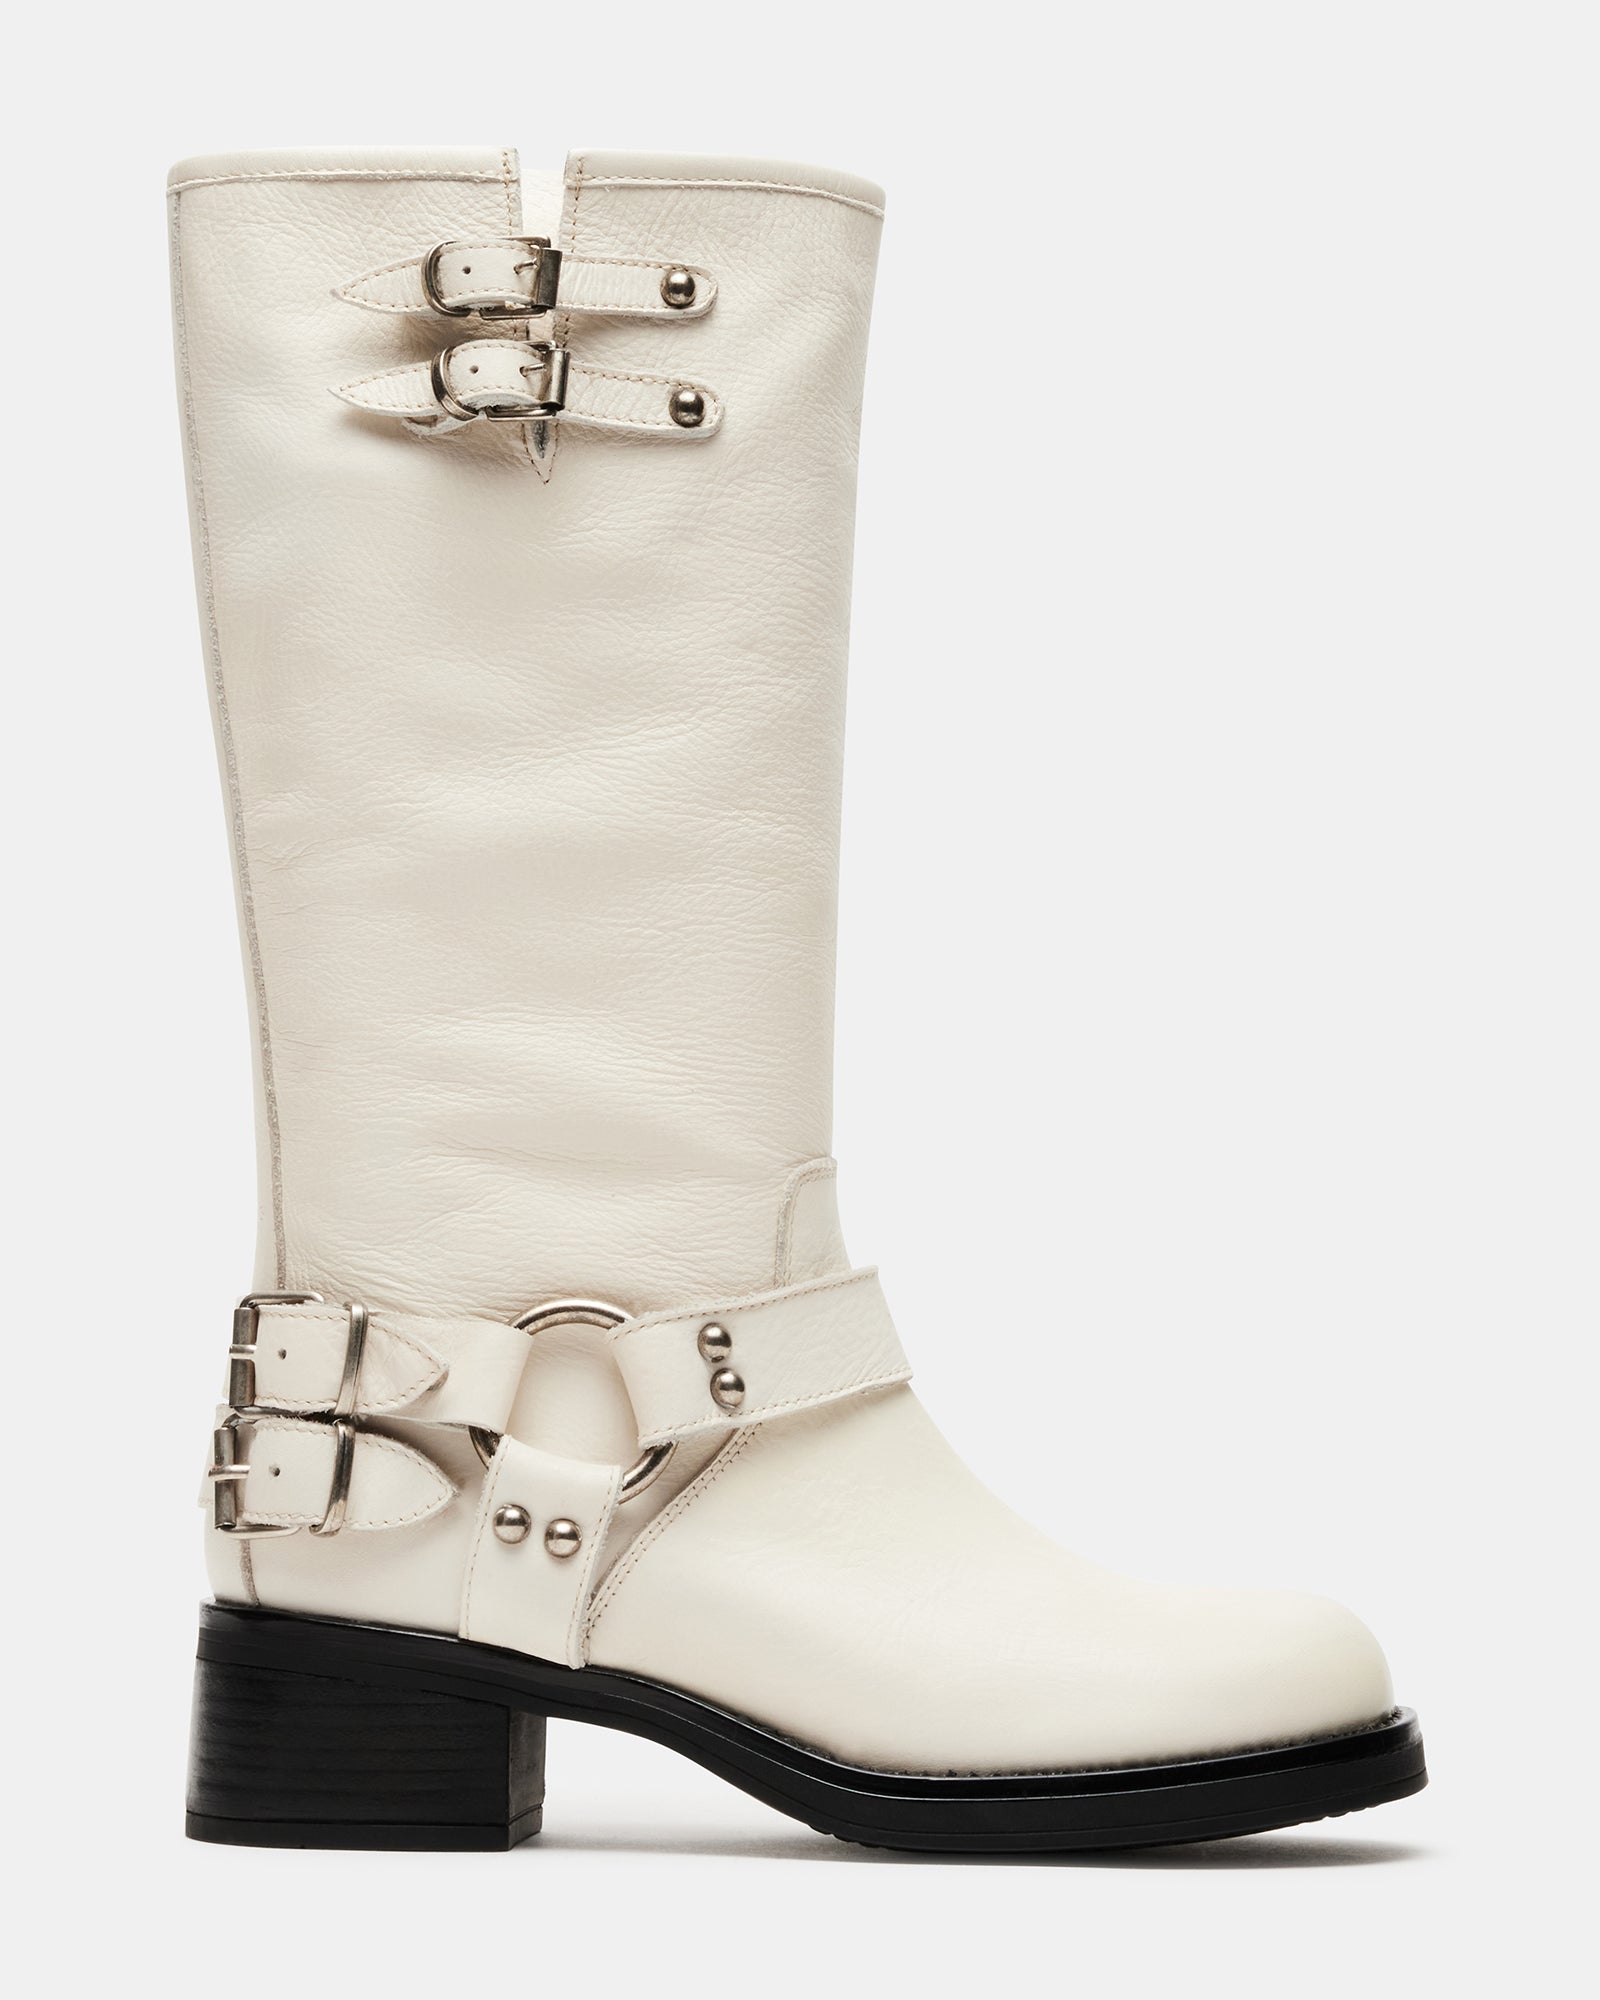 Women's Boots | Over The Knee, Block Heel, Western & Platform